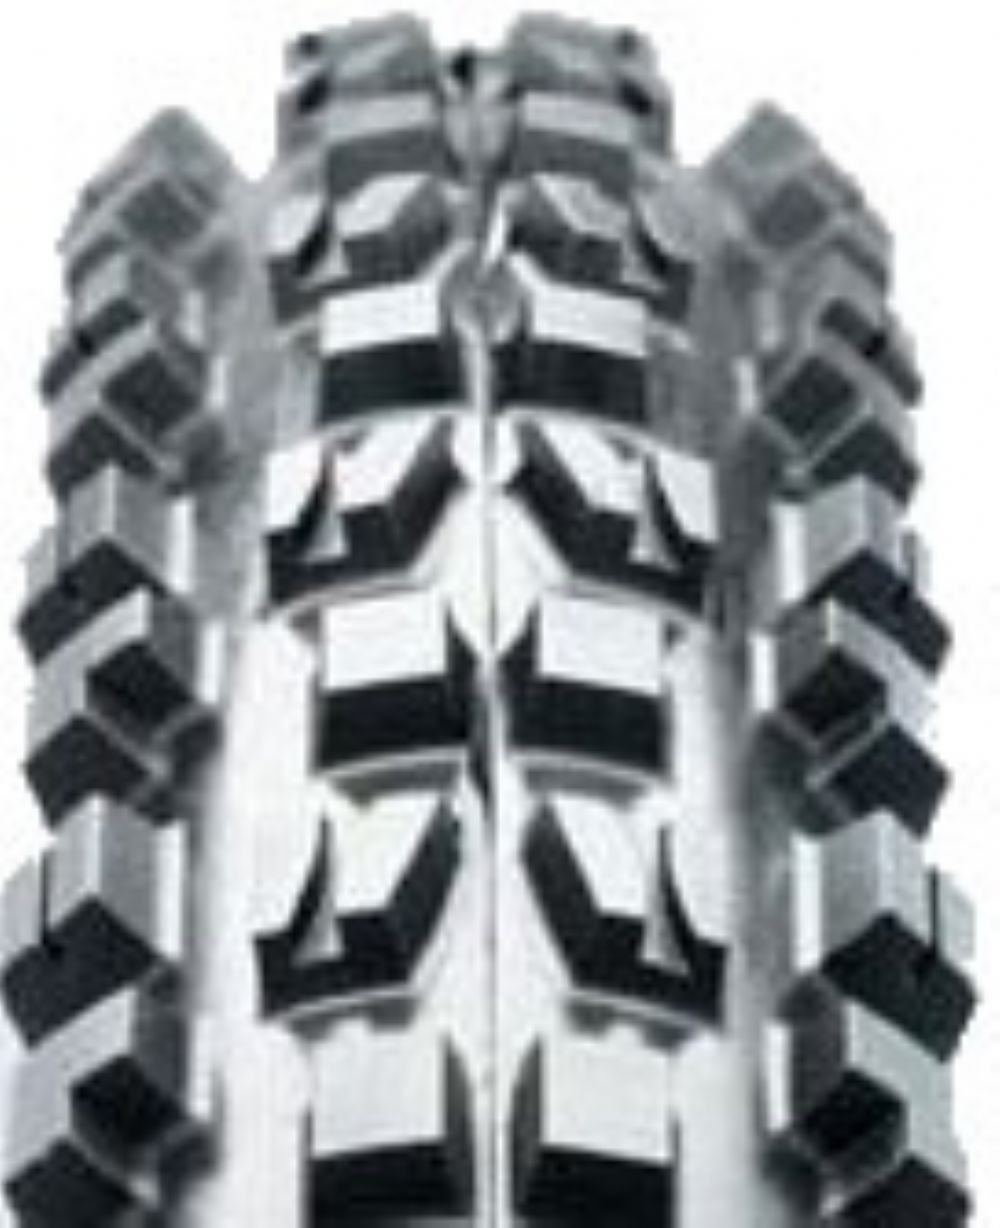 26 x 2.35 mountain bike tires